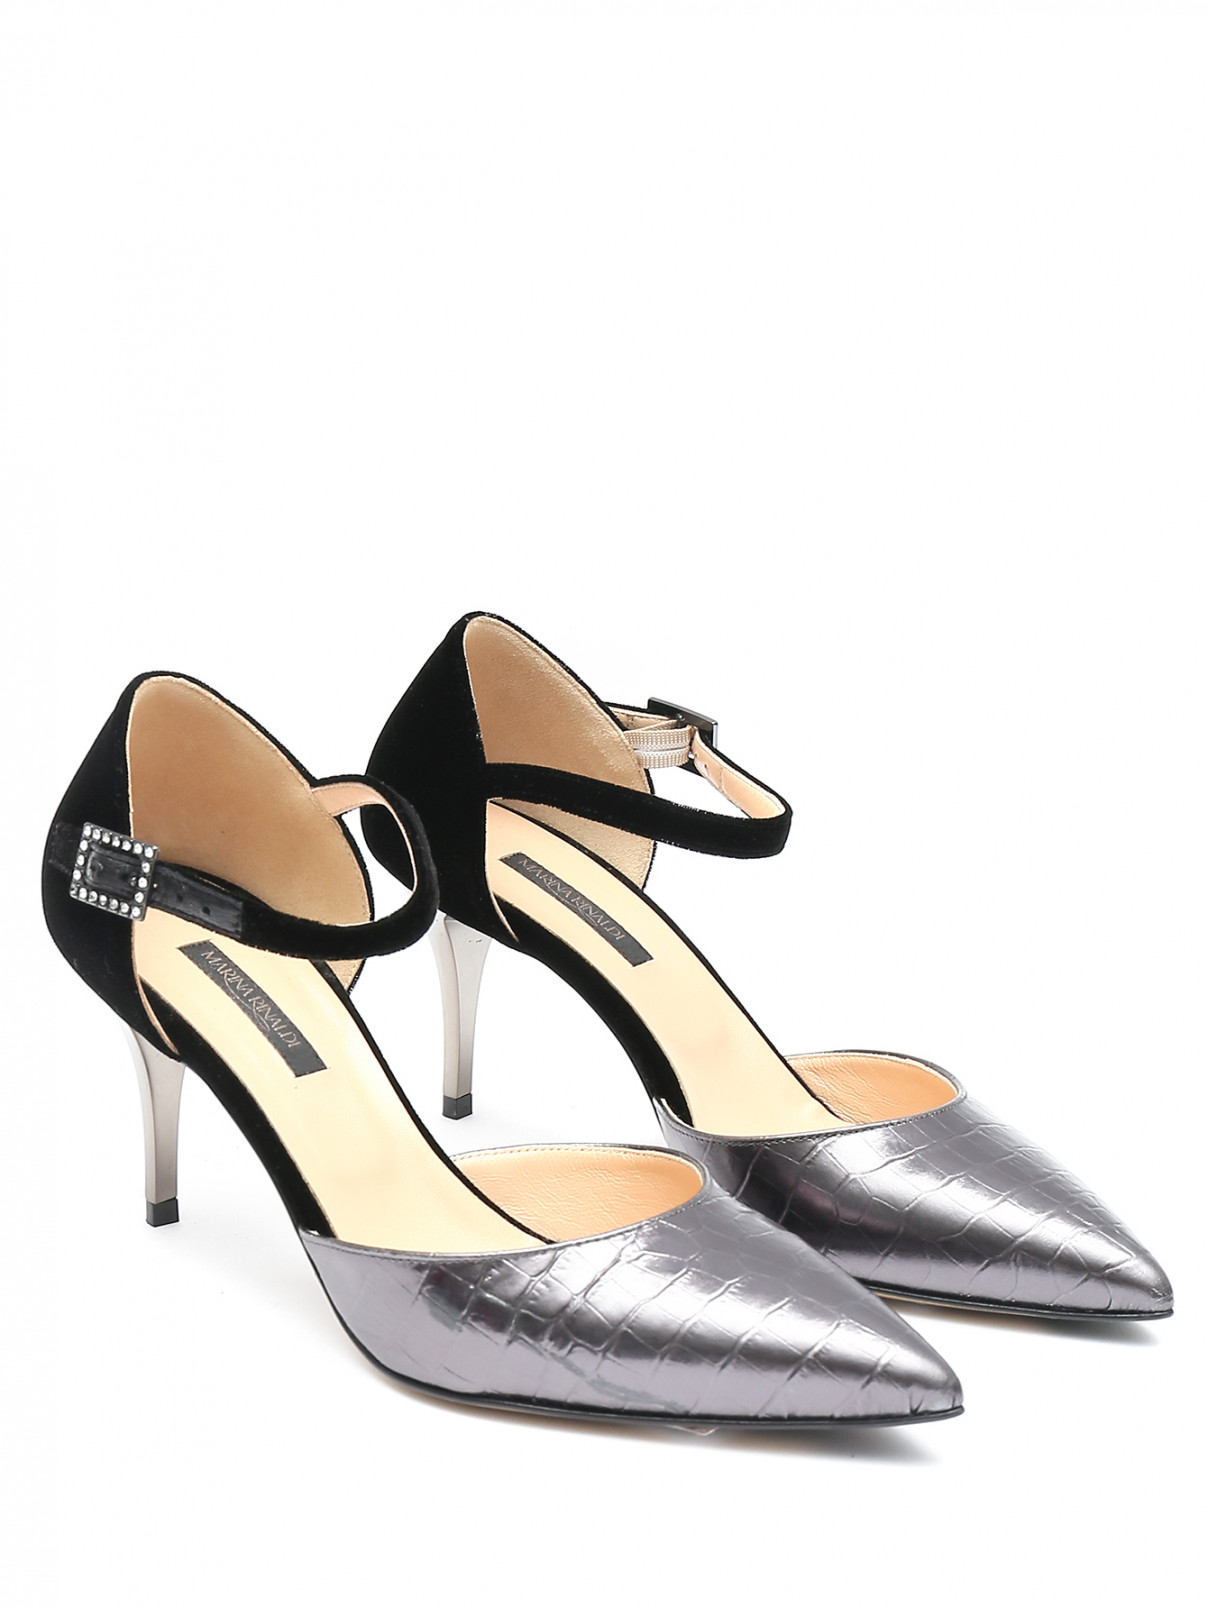 Туфли из кожи на среднем каблуке Marina Rinaldi  –  Общий вид  – Цвет:  Черный